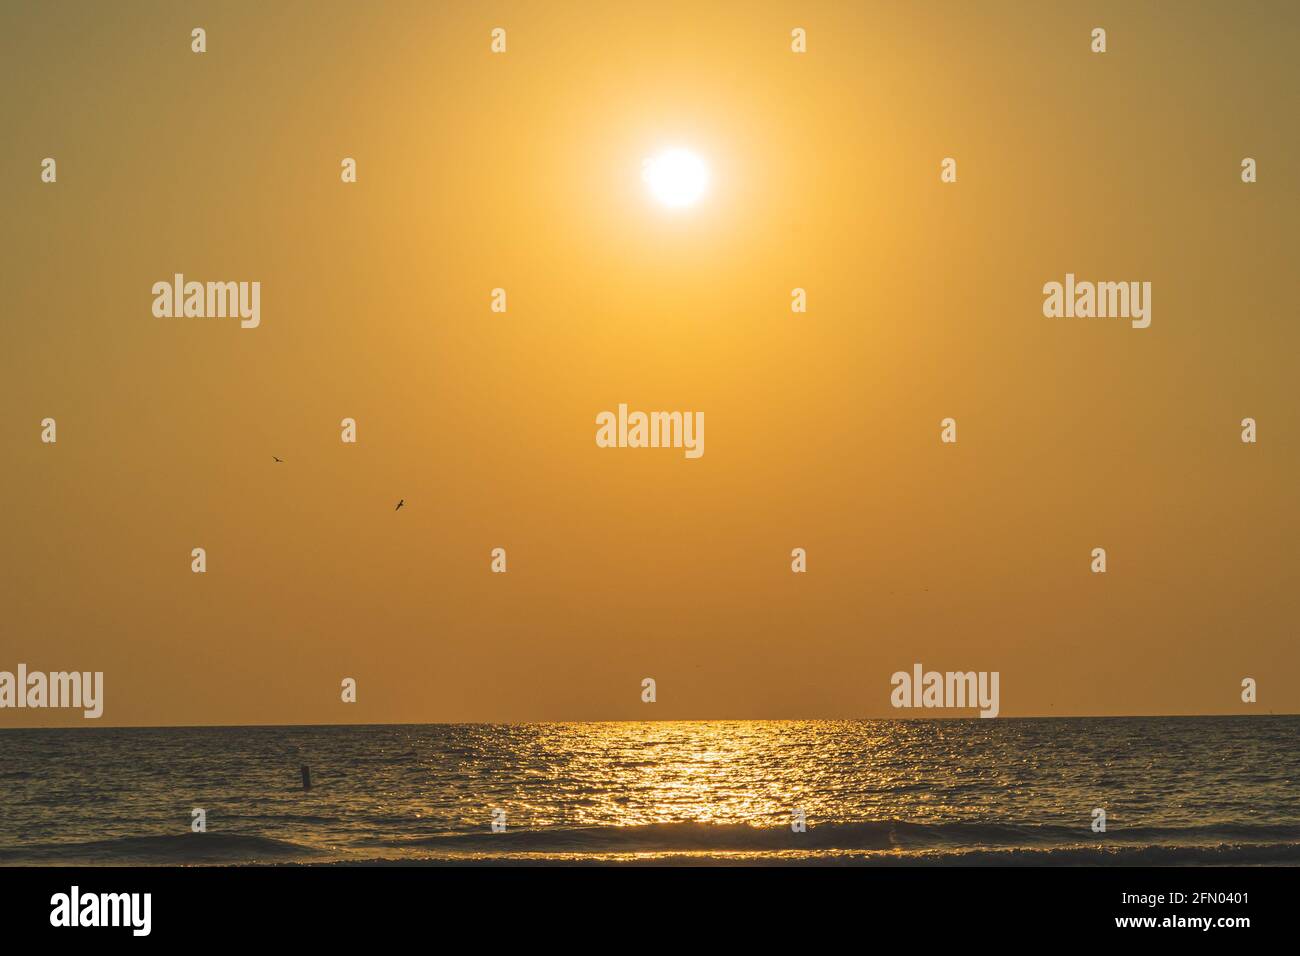 Vista panoramica del sole nel cielo arancione che si riflette sul acqua durante il tramonto Foto Stock